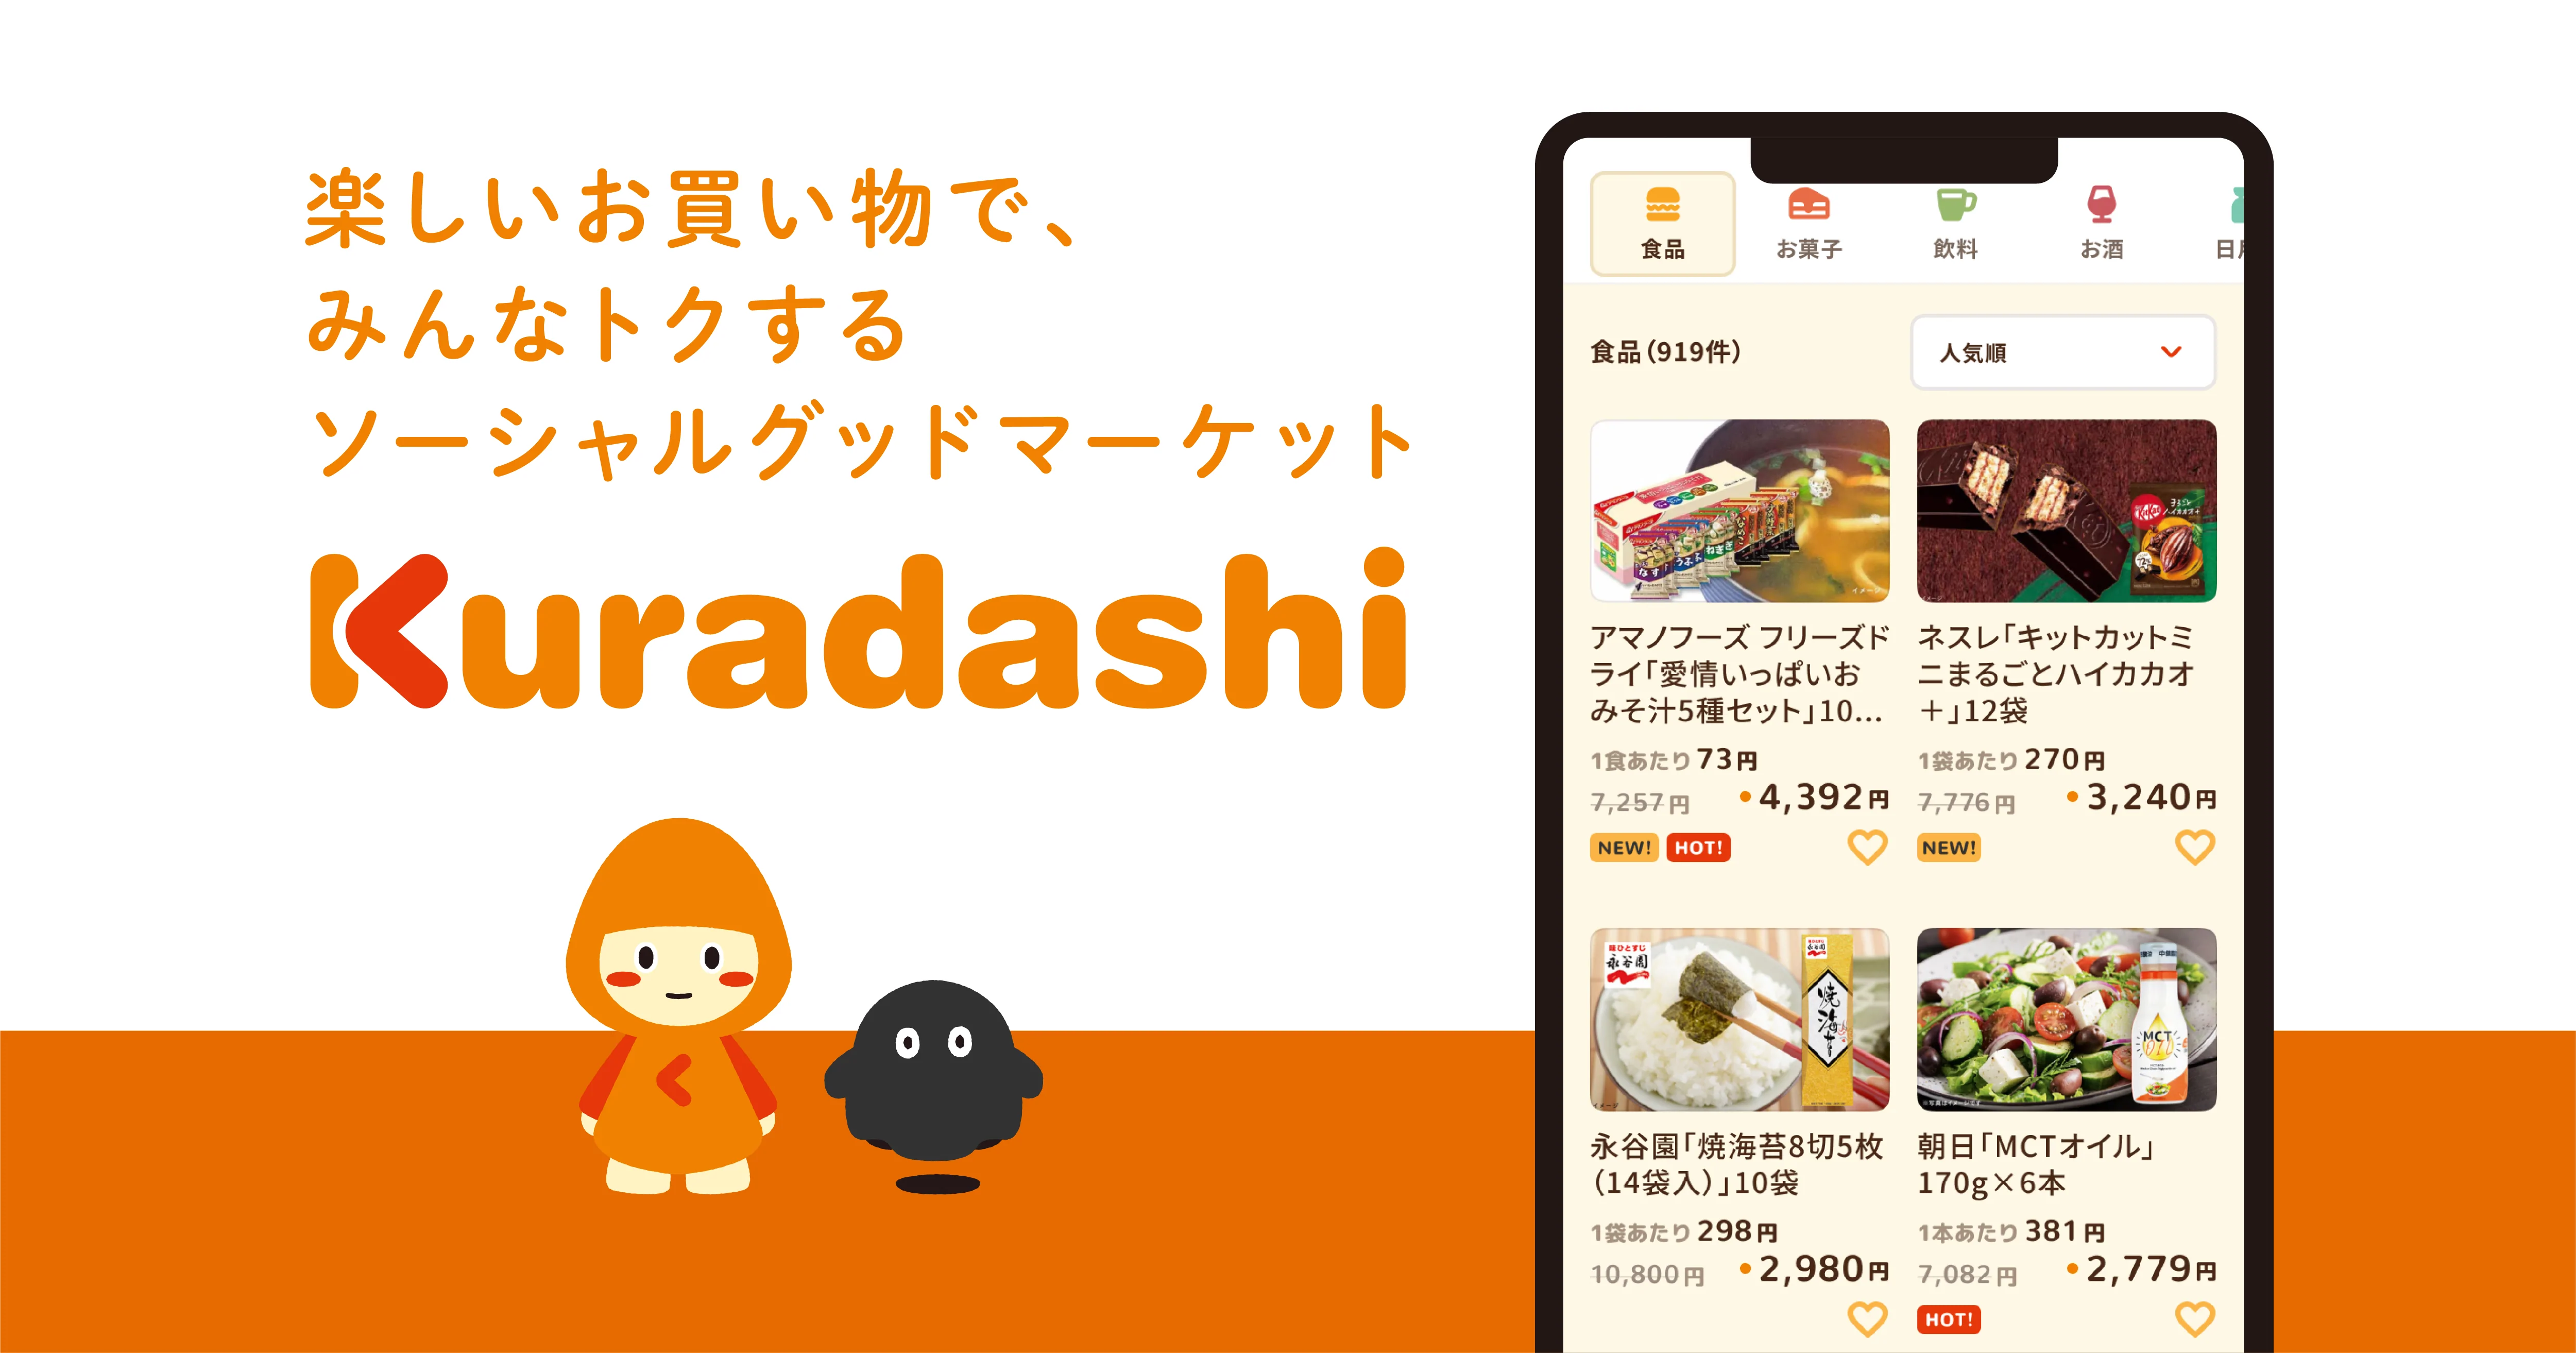 Kuradashi｜楽しいお買い物で、みんなトクするソーシャルグッドマーケット。フードロス・食品ロス削減